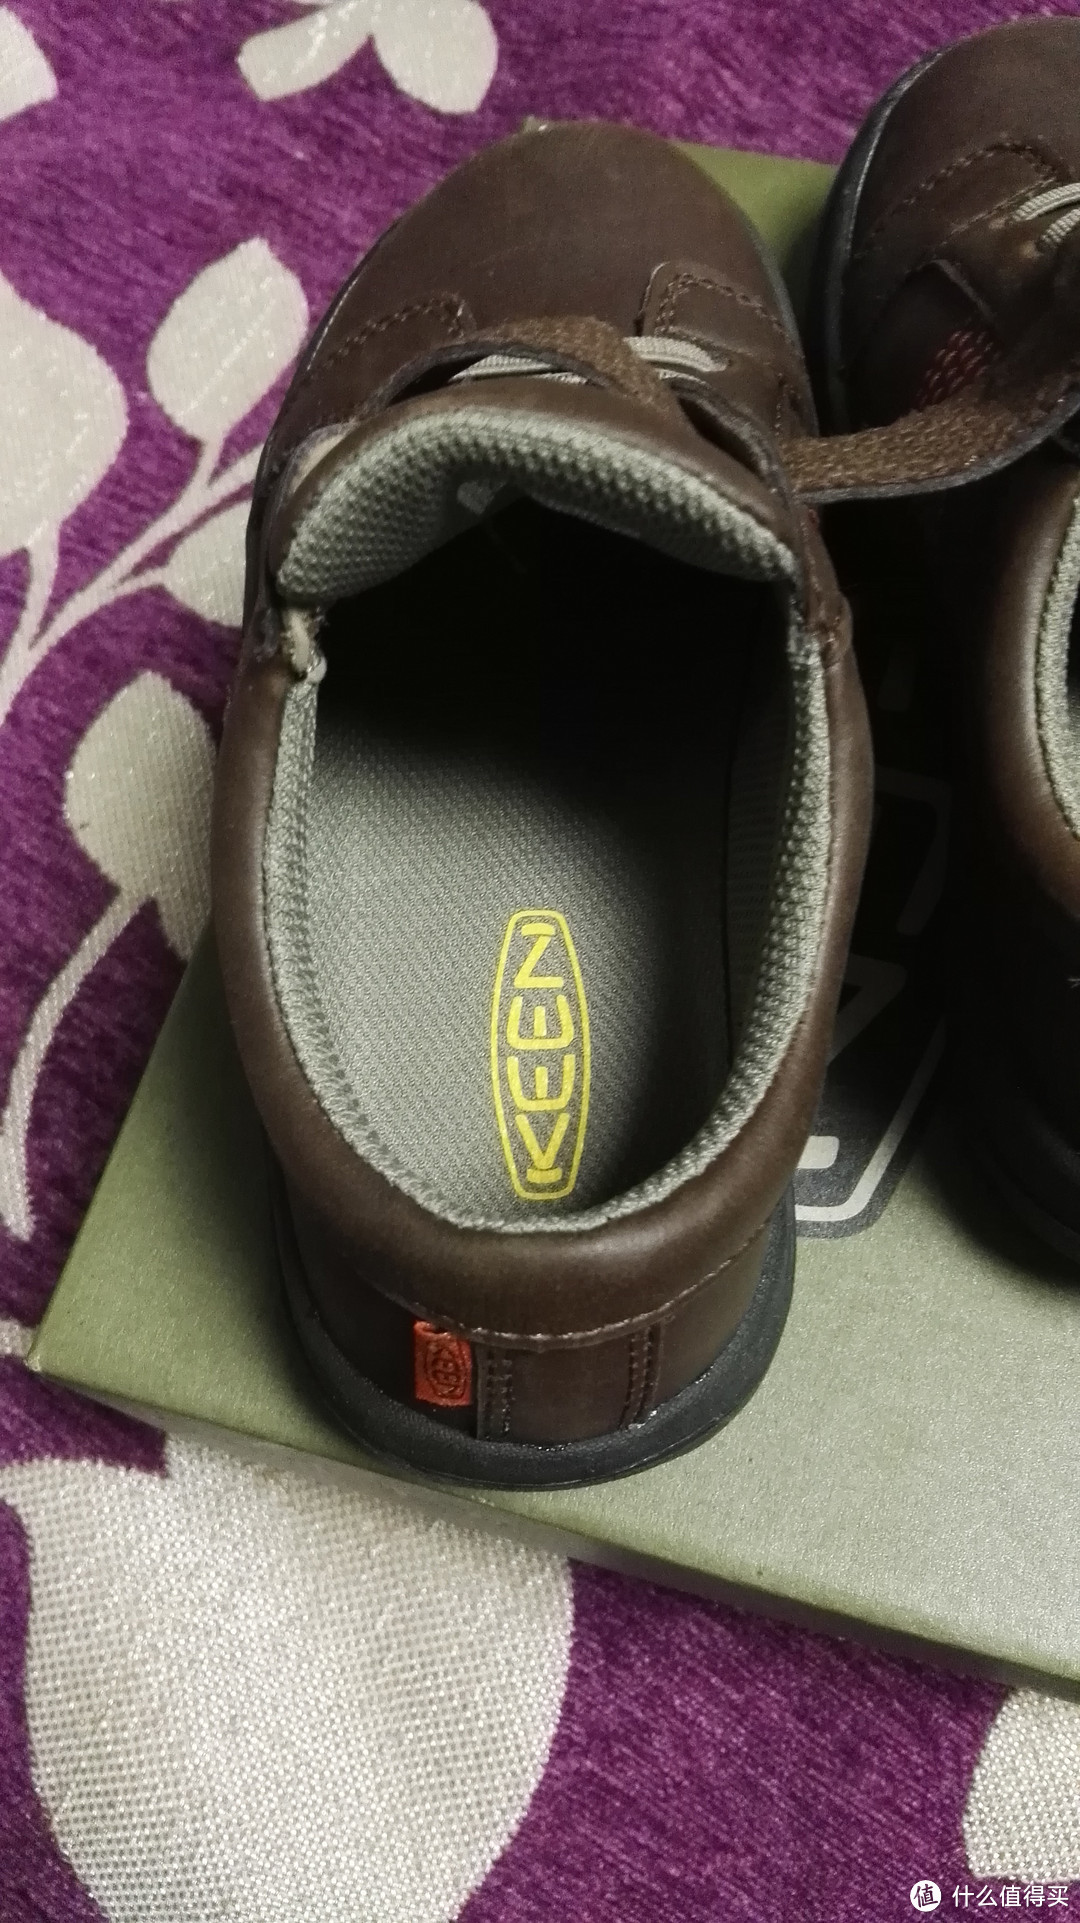 皮孩子的第一双皮鞋------KEEN Austin II-C Shoe